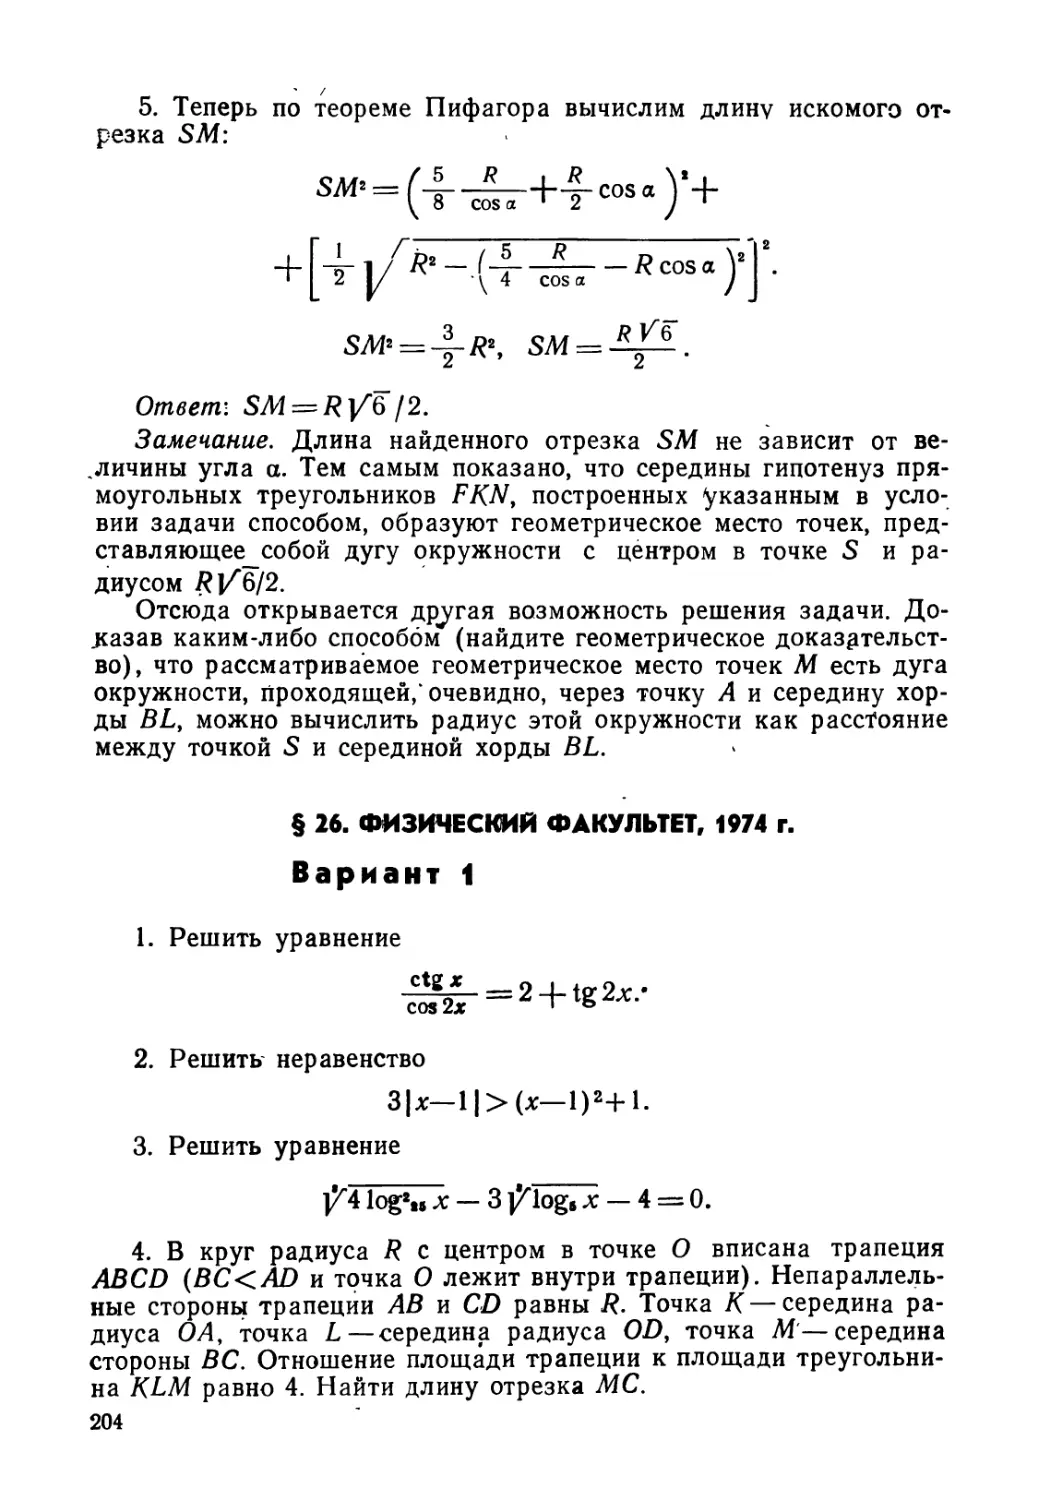 § 26. Физический факультет, 1974 г